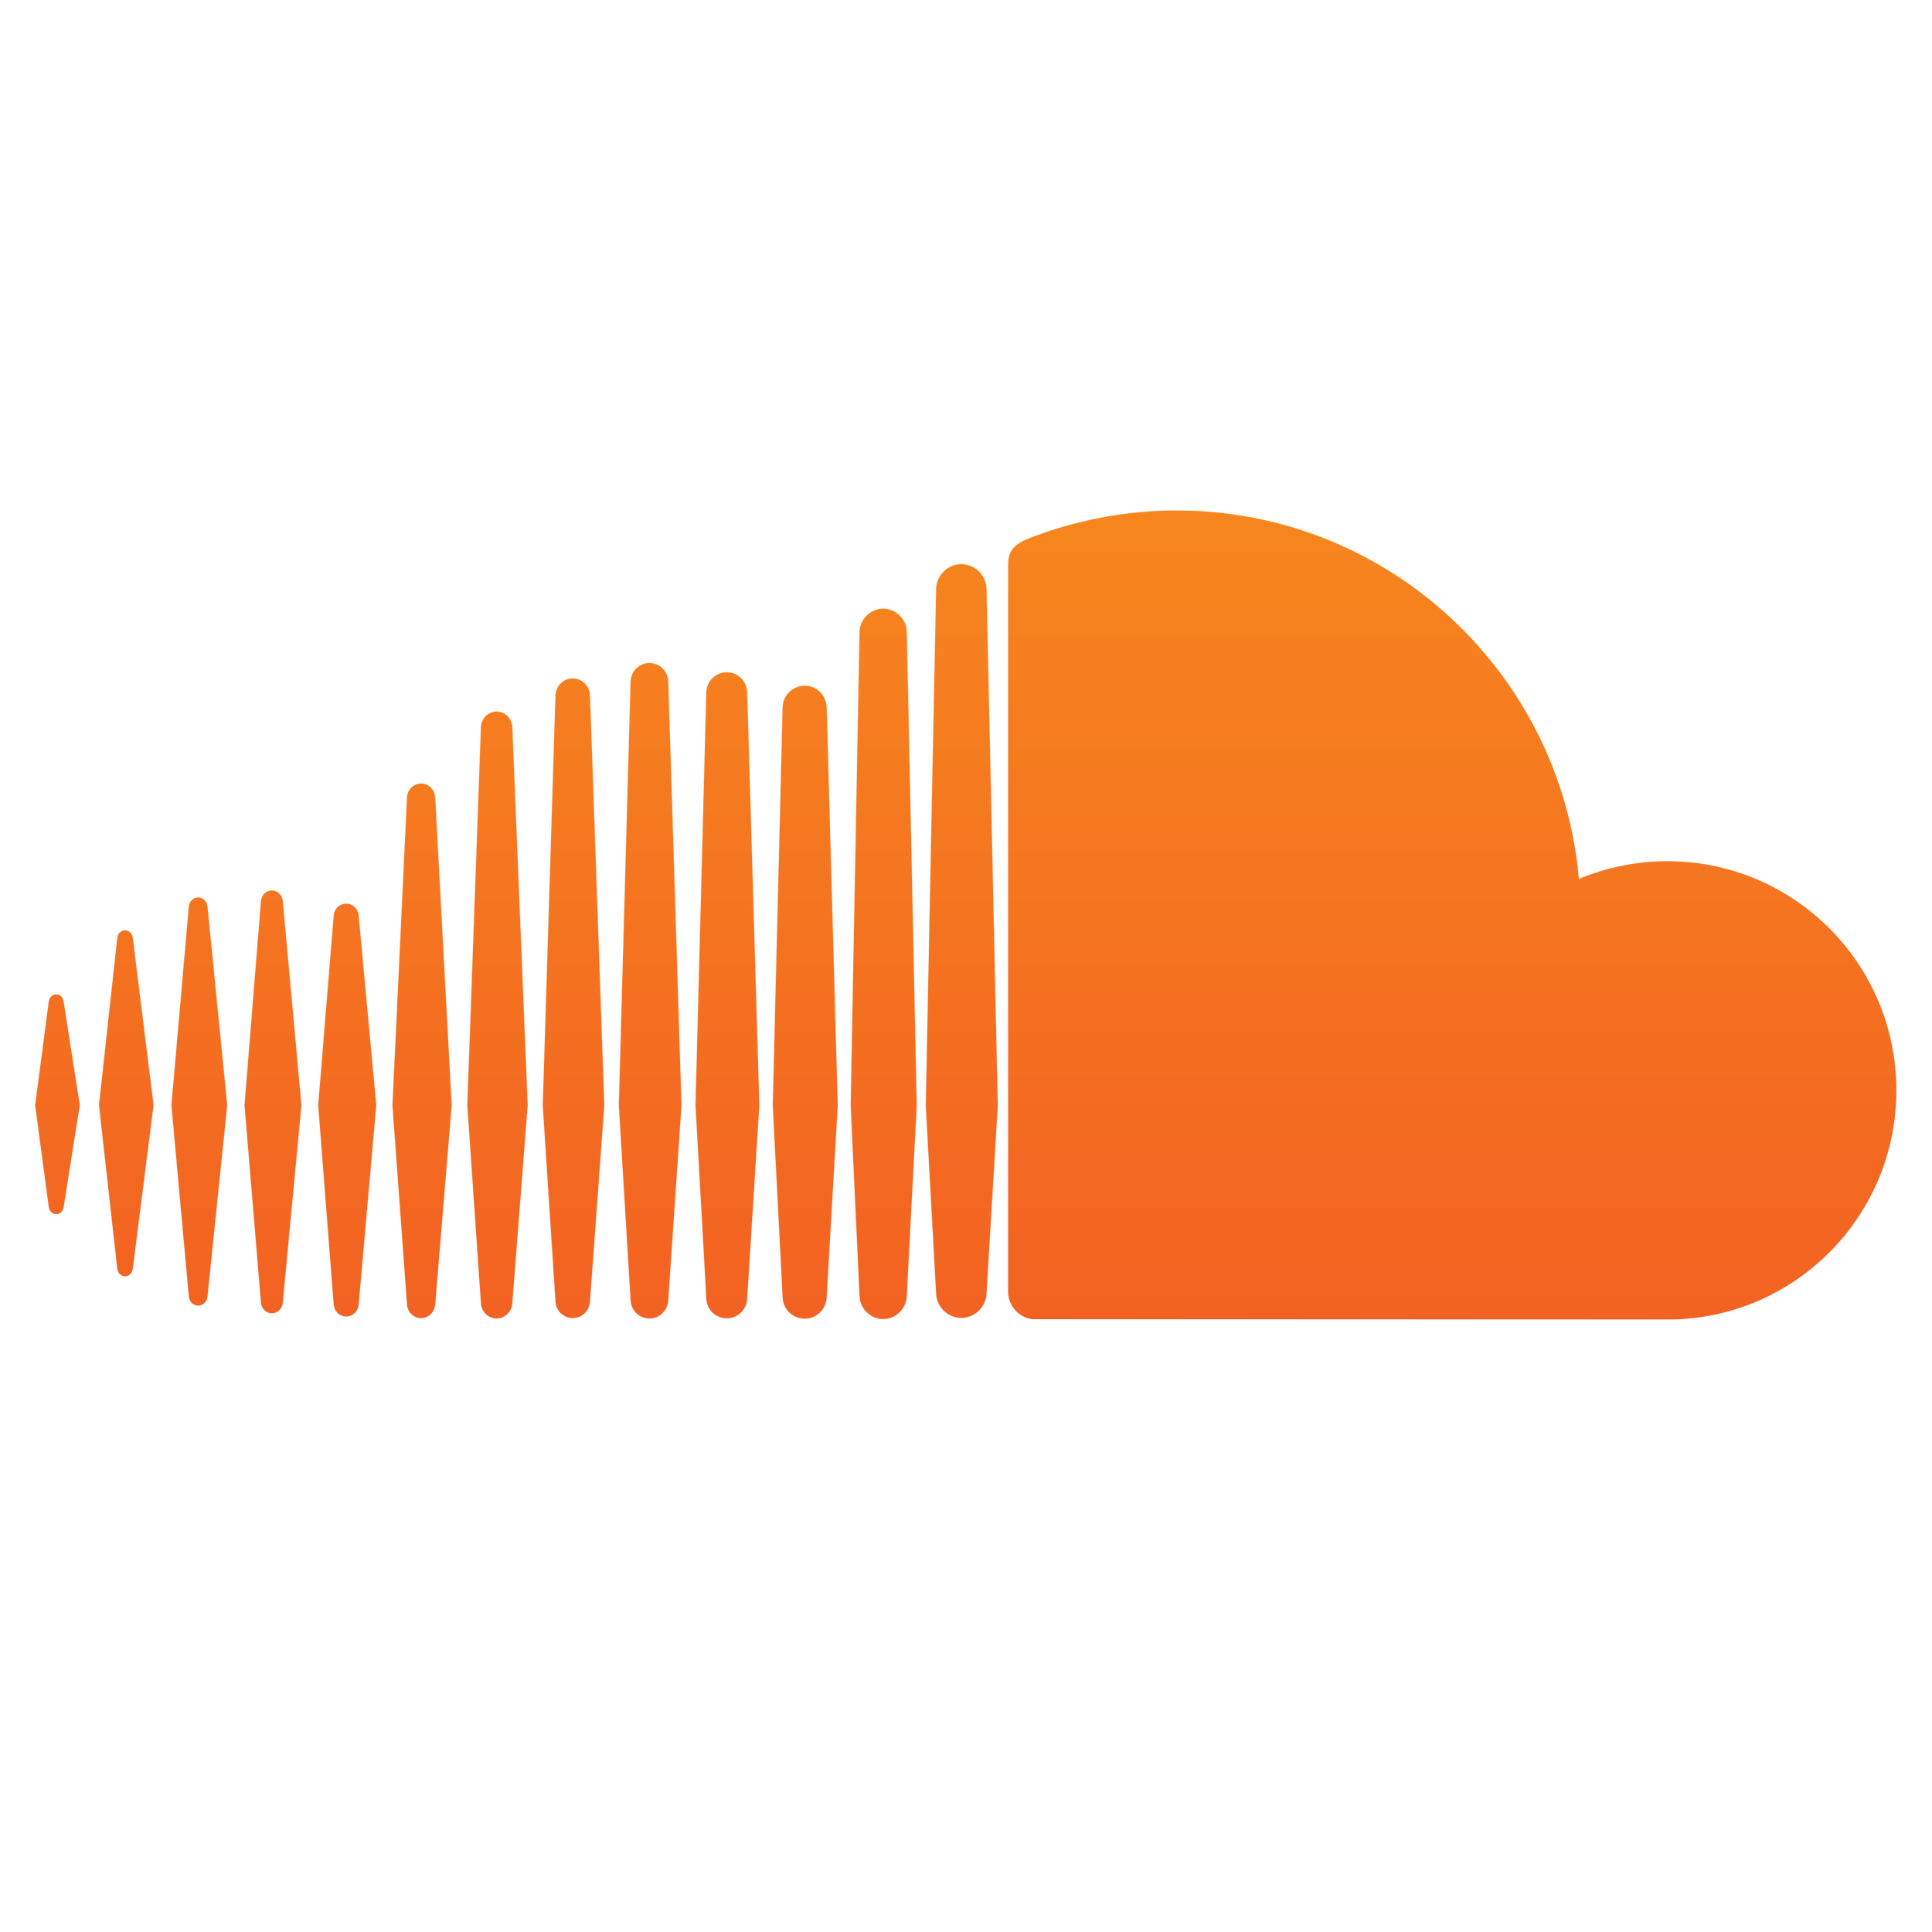 Soundcloud-logo.png